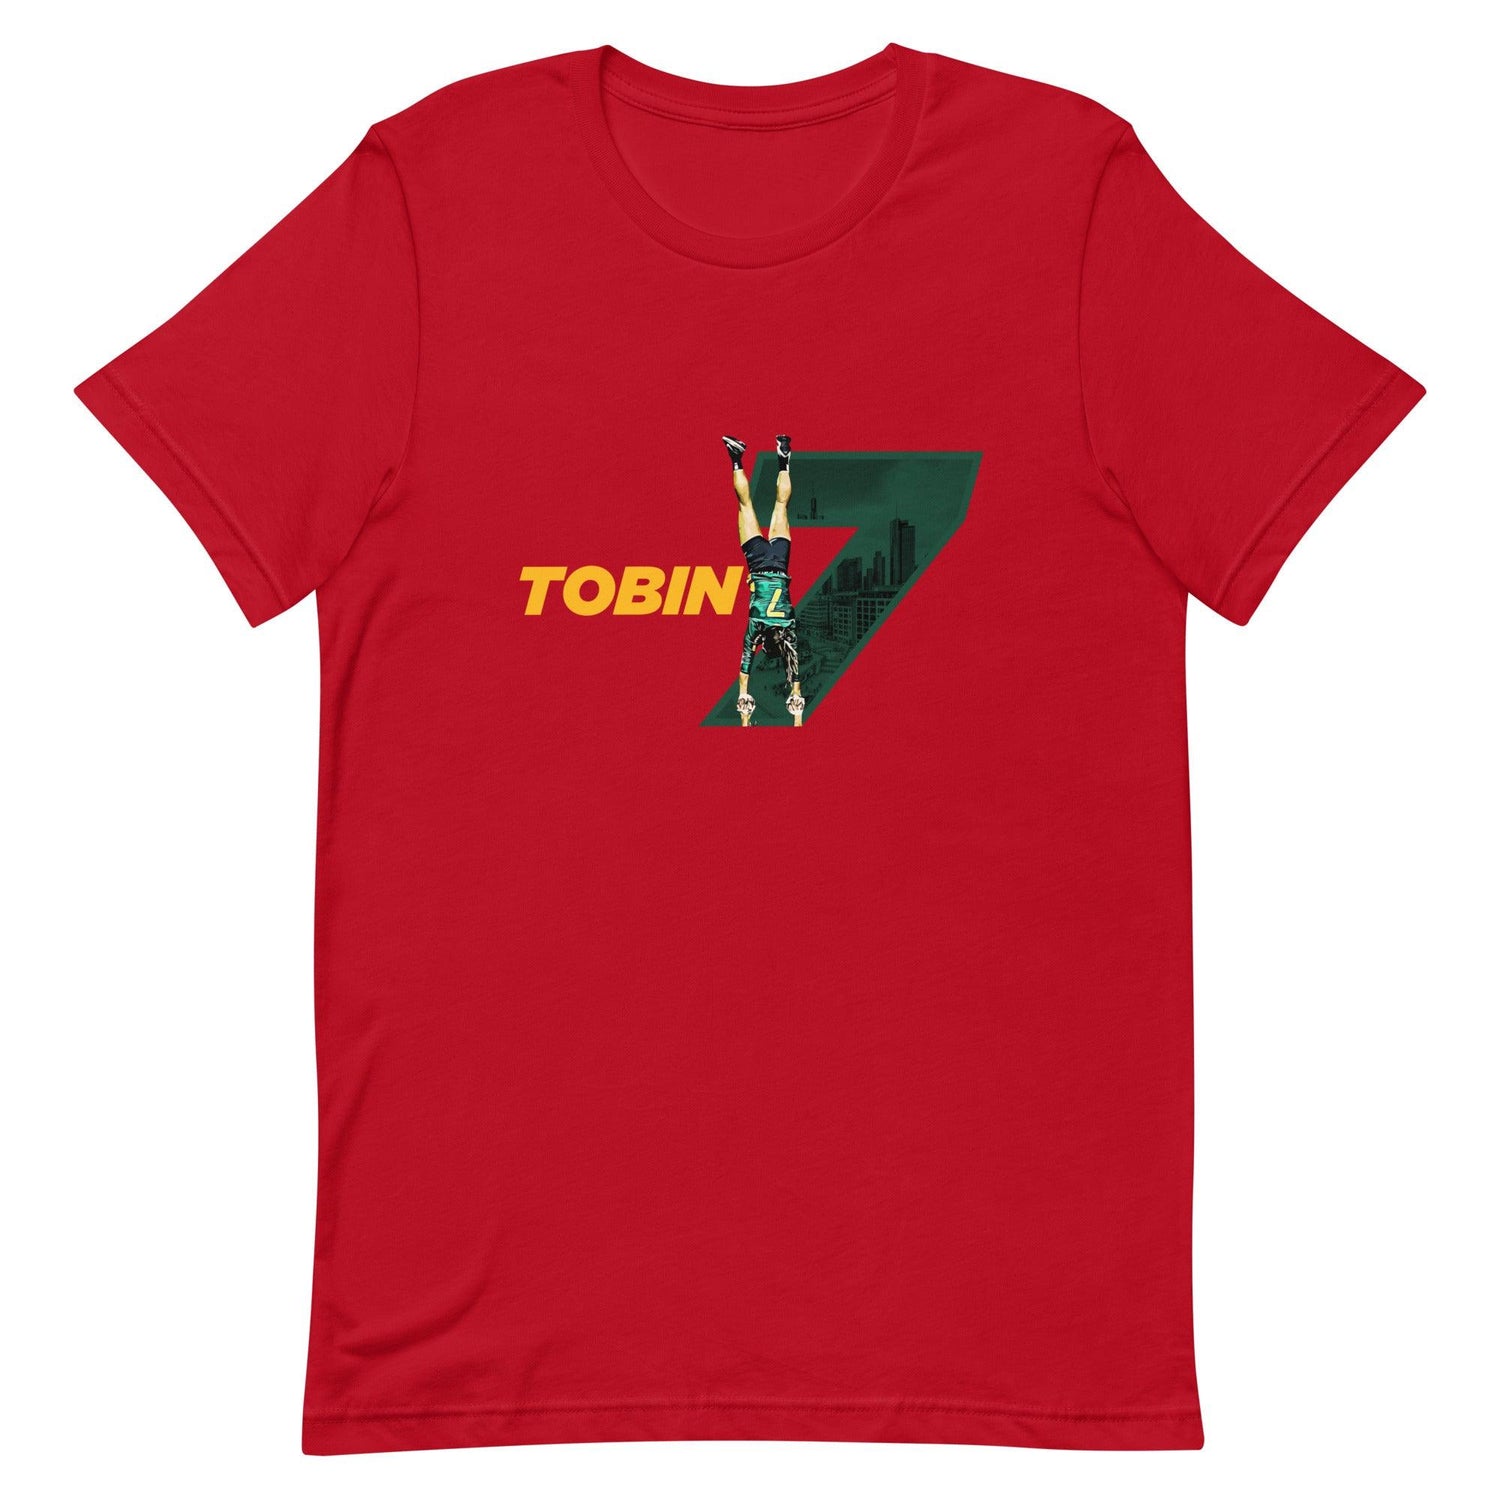 Emily Tobin "Inspire" t-shirt - Fan Arch